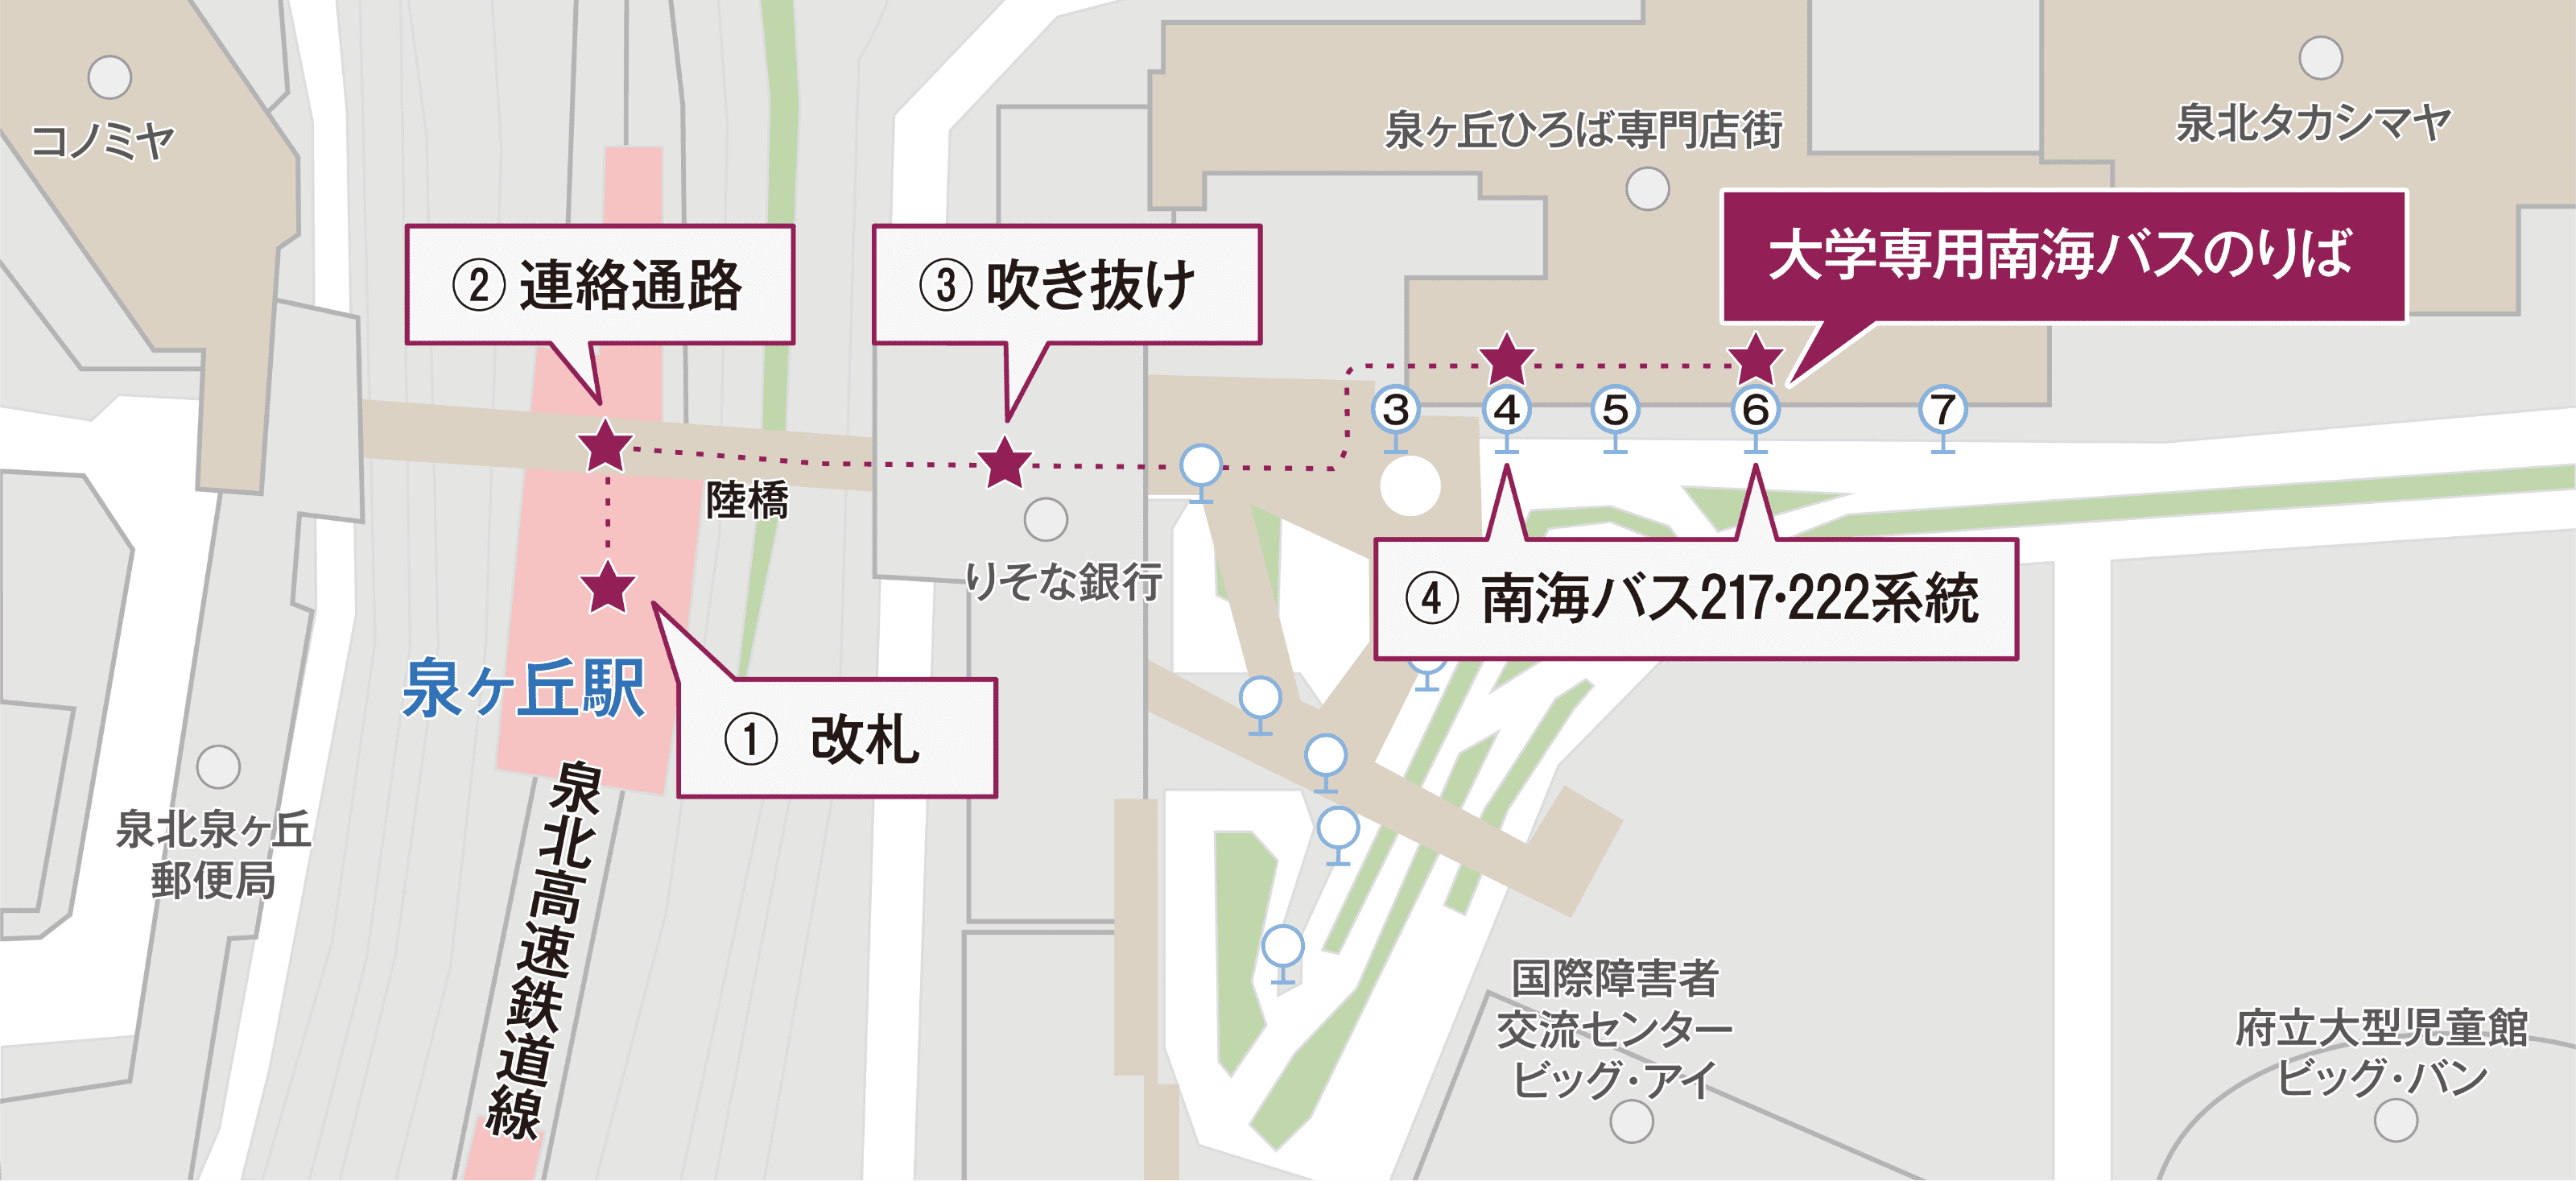 泉北高速鉄道「泉ヶ丘」駅からのアクセスマップ